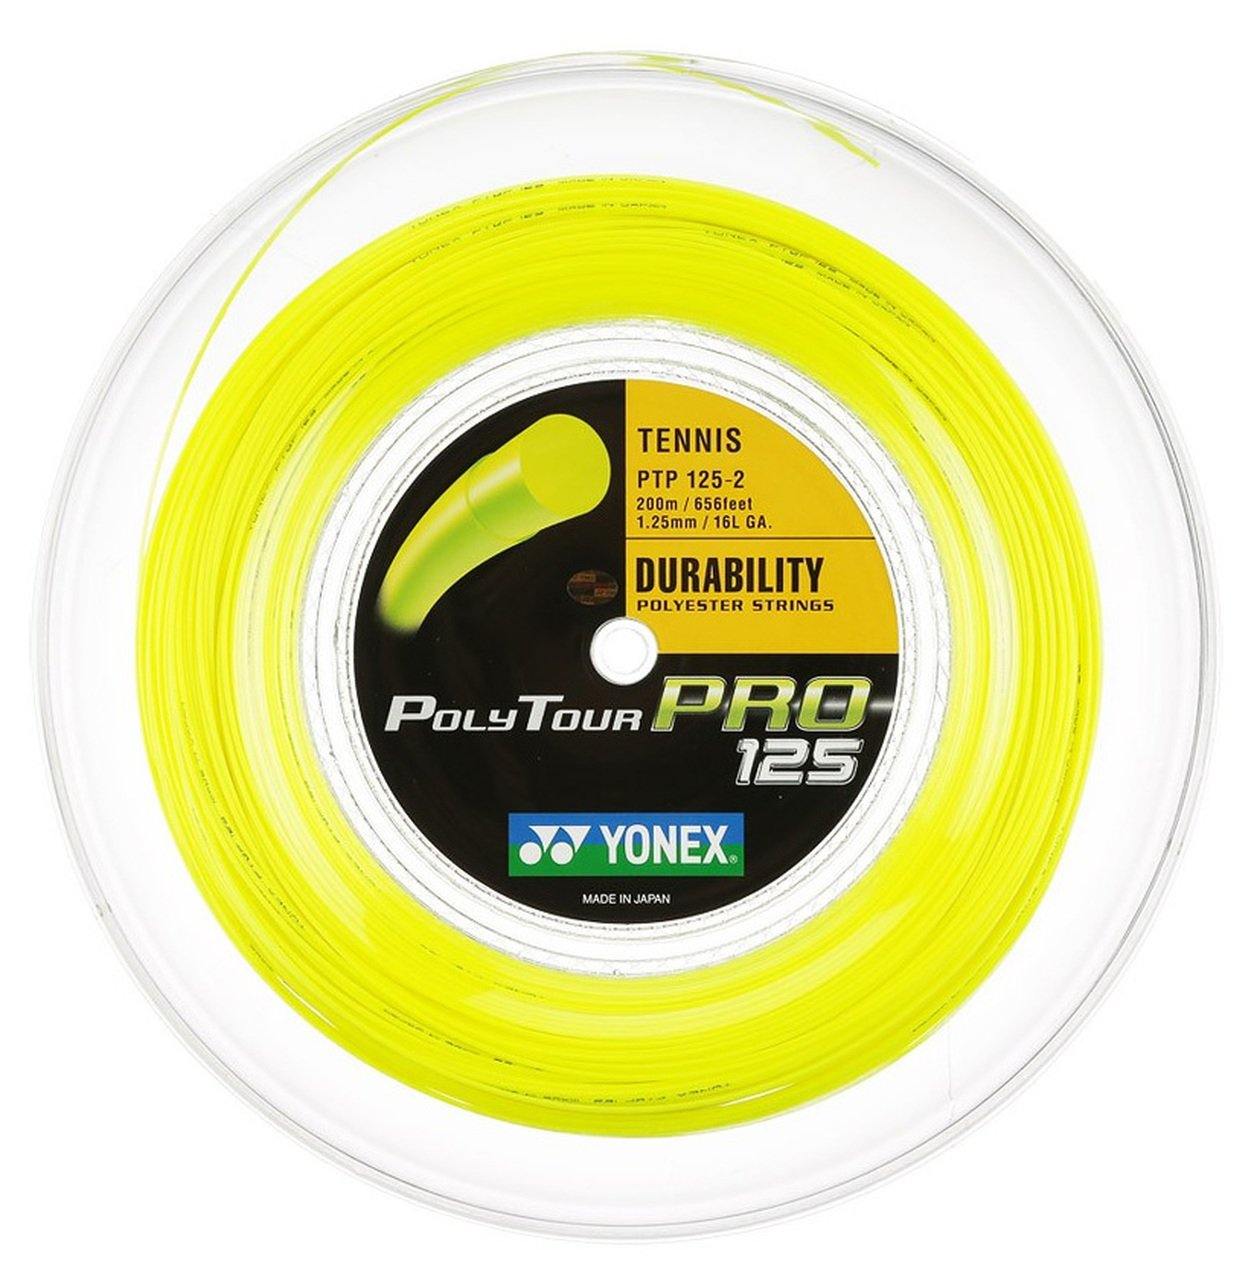 Yonex Polytour Pro 125 16L 200m Reel Tennis Strings [Yellow] - Yumo Pro  Shop – Yumo Pro Shop - Racquet Sports Online Store